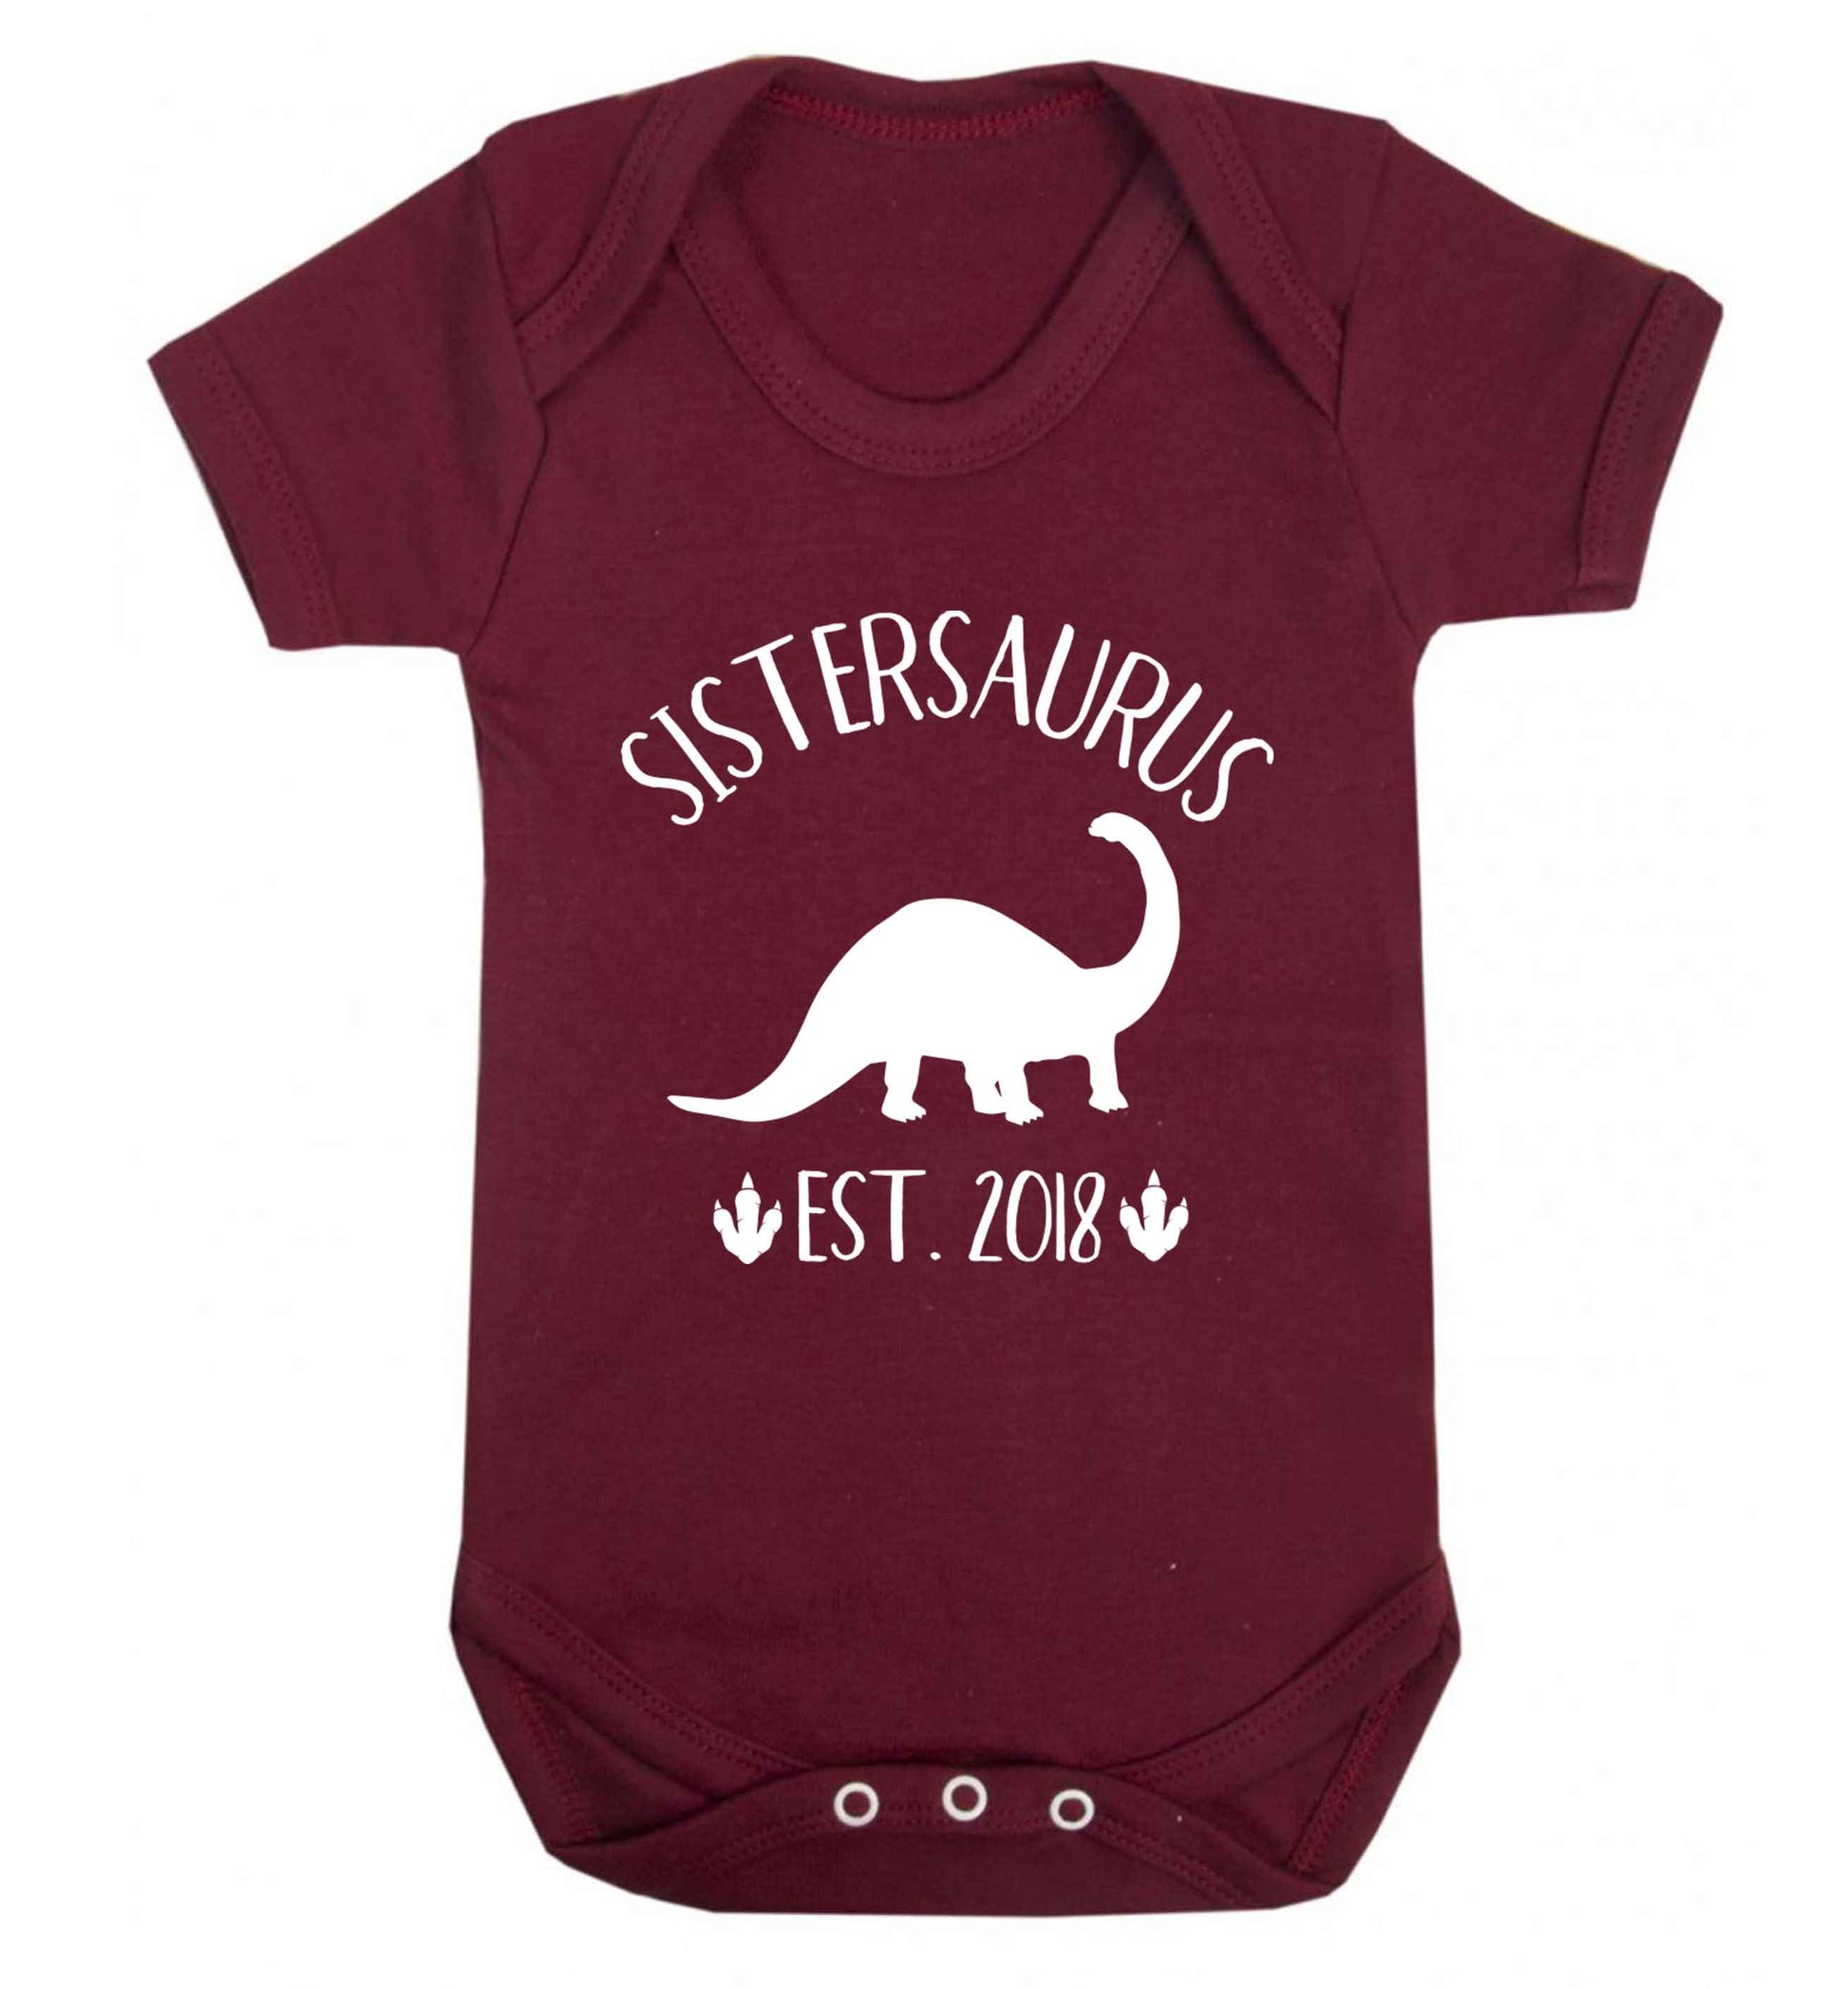 Personalised sistersaurus since (custom date) Baby Vest maroon 18-24 months